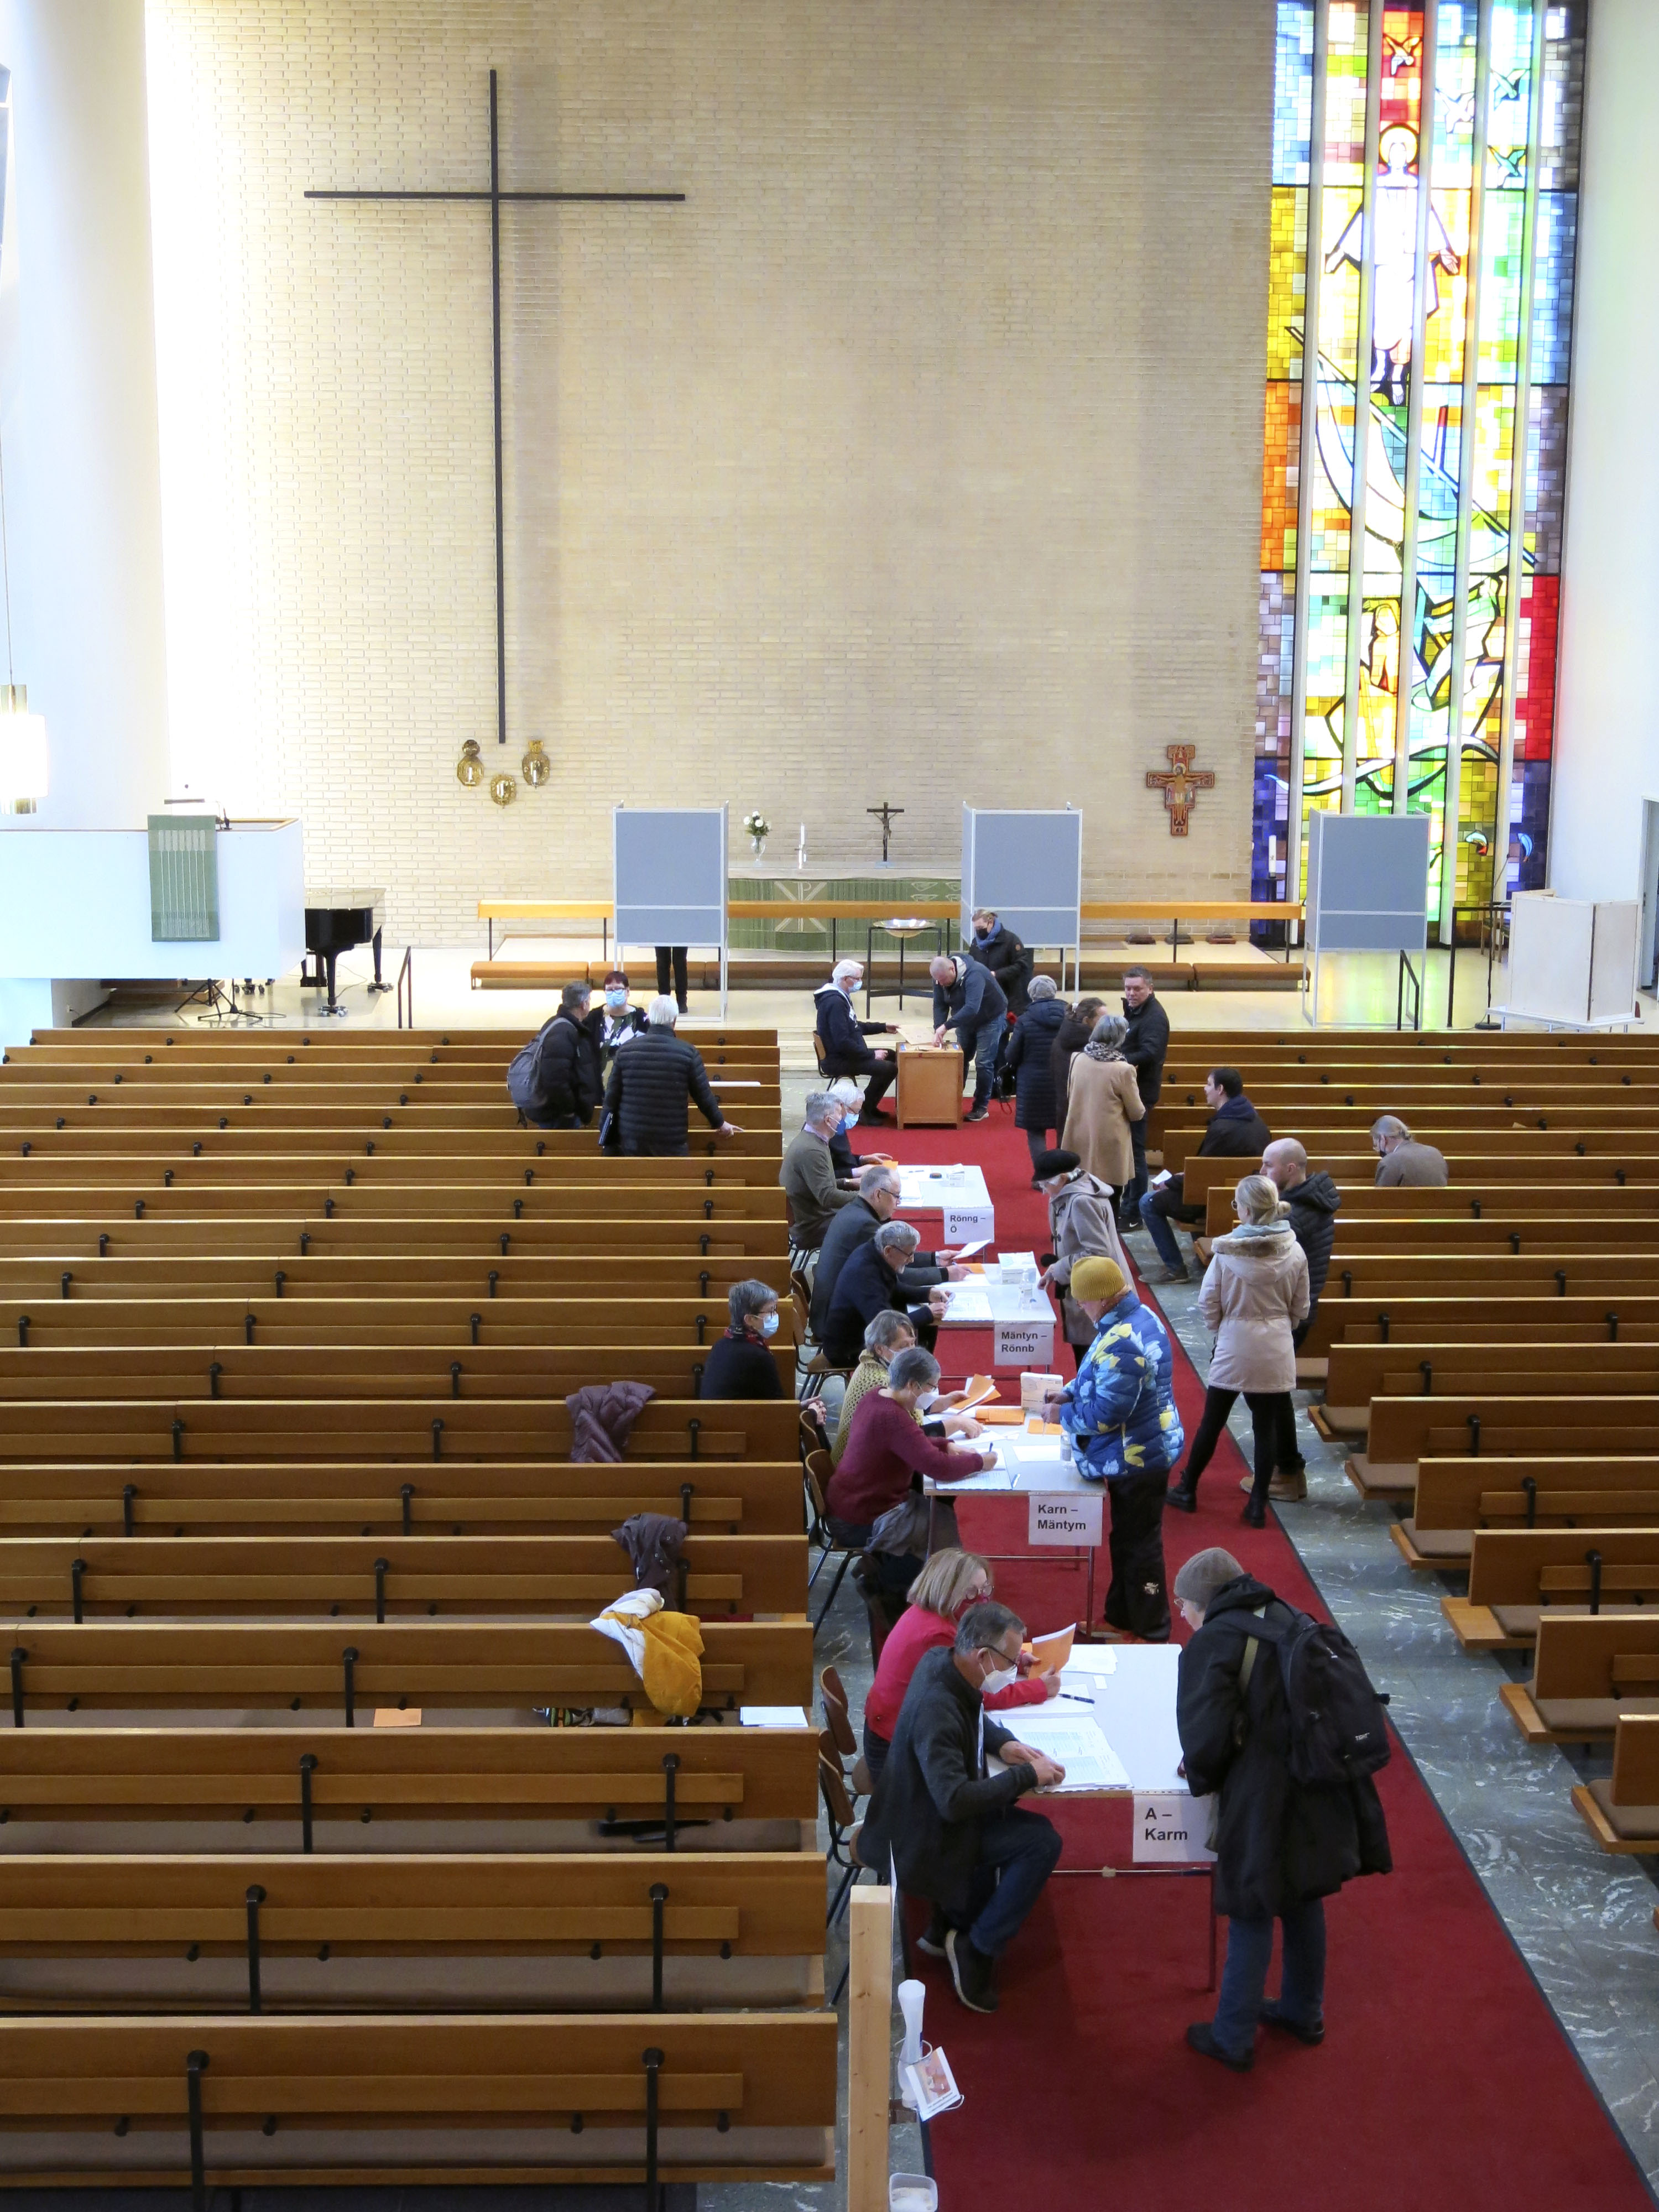 Väkeä kirkon käytävällä äänestyspäivänä.